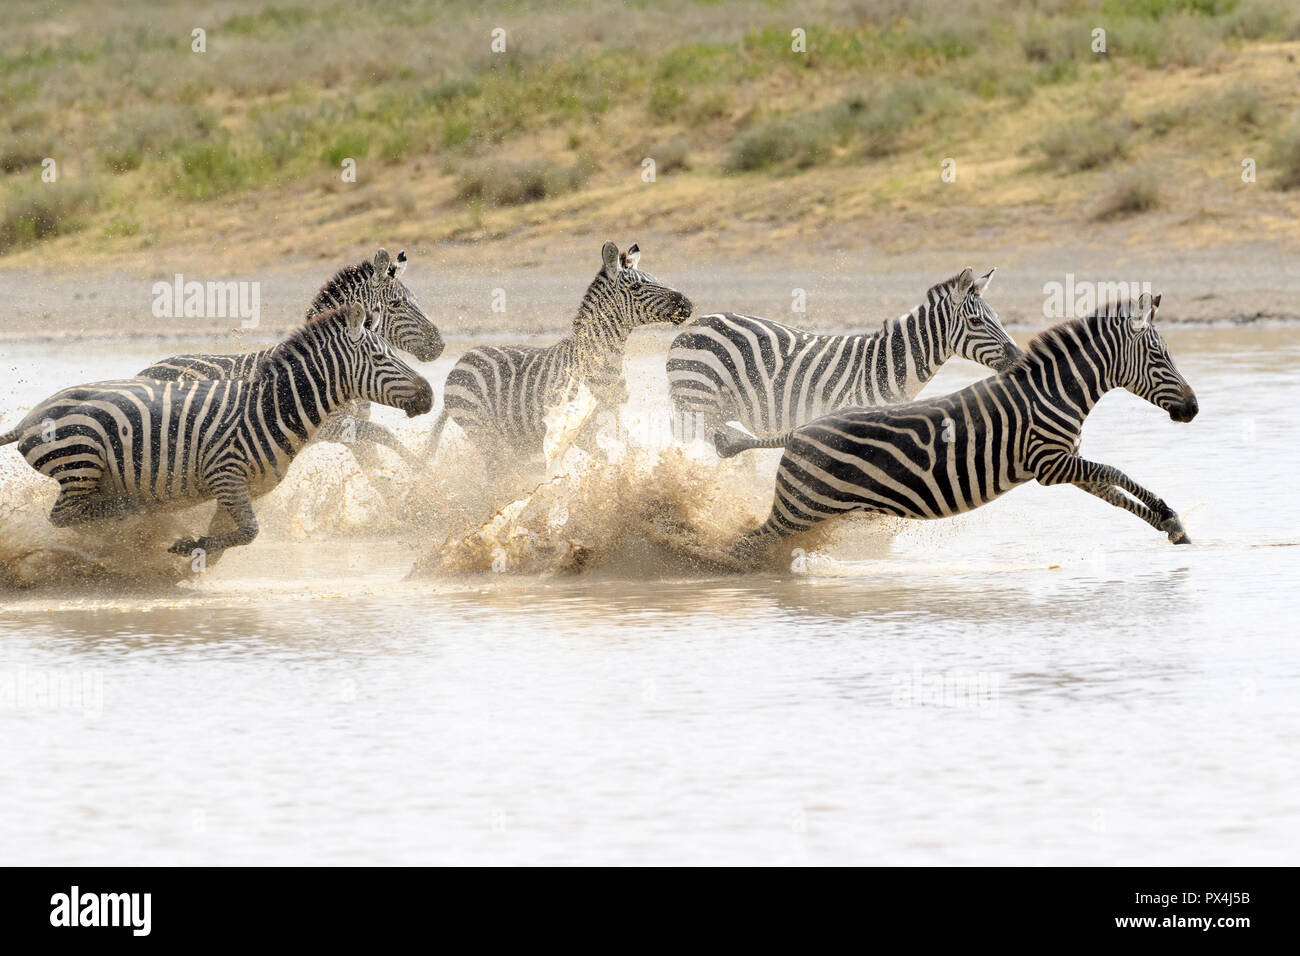 Common or Plains Zebra (Equus quagga) herd, running fast in splashing water, Ngorongoro crater national park, Tanzania Stock Photo